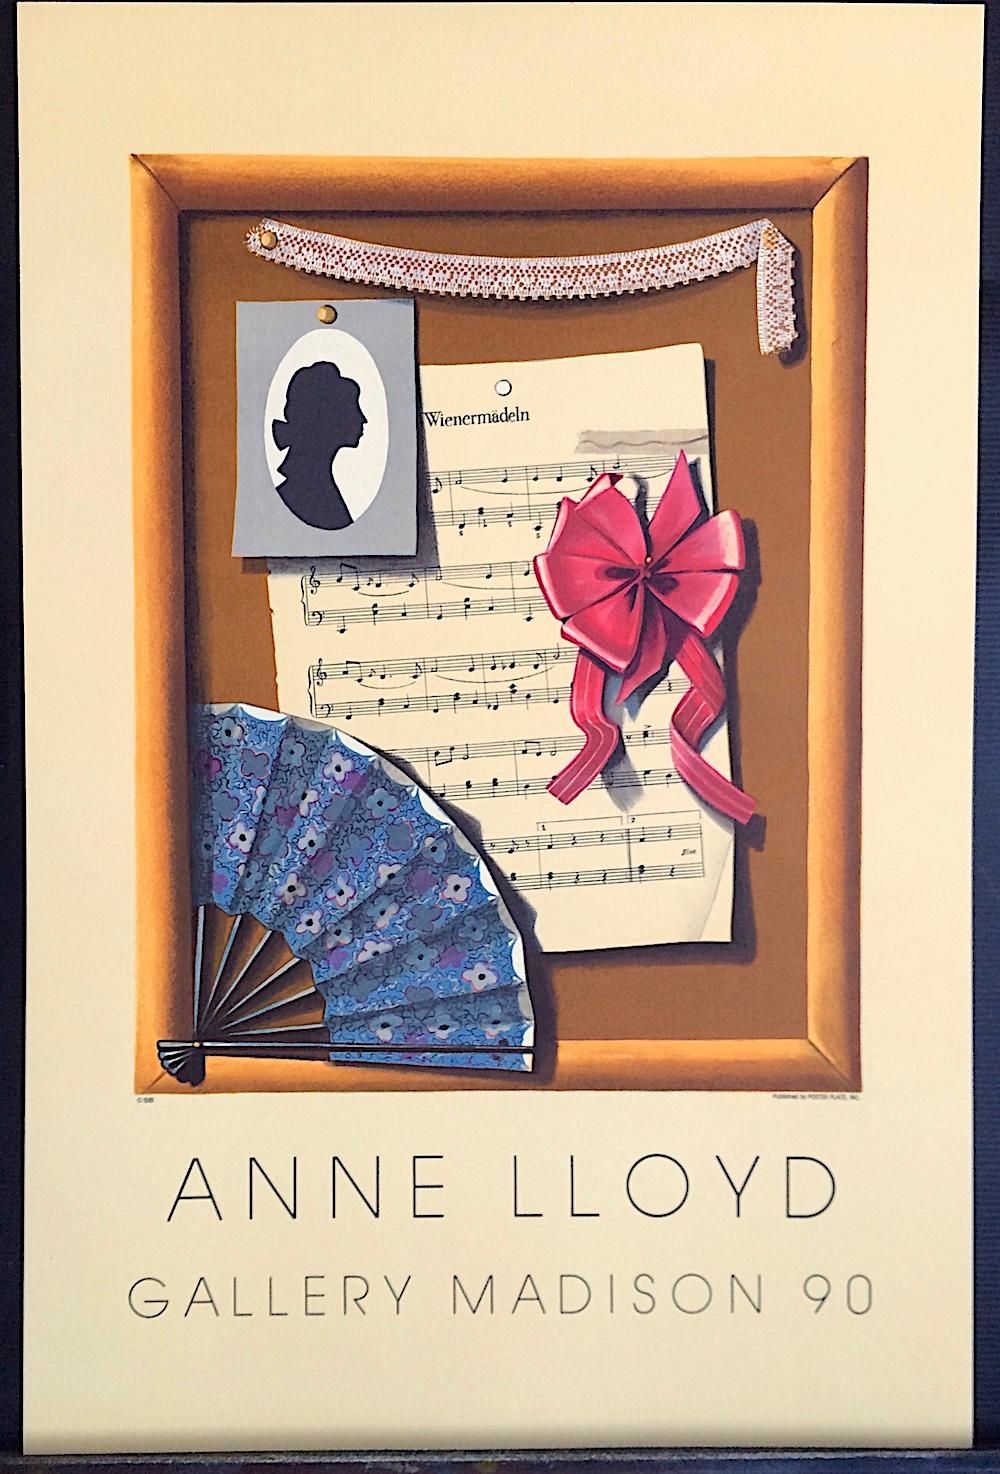 Anne Lloyds VIENNESE STILL LIFE ist eine handgezeichnete Lithografie in limitierter Auflage, gedruckt in Handlithografietechnik auf 100% säurefreiem Archivpapier. Aus einer limitierten Auflage von 300 Drucken, die speziell für Frau Lloyds